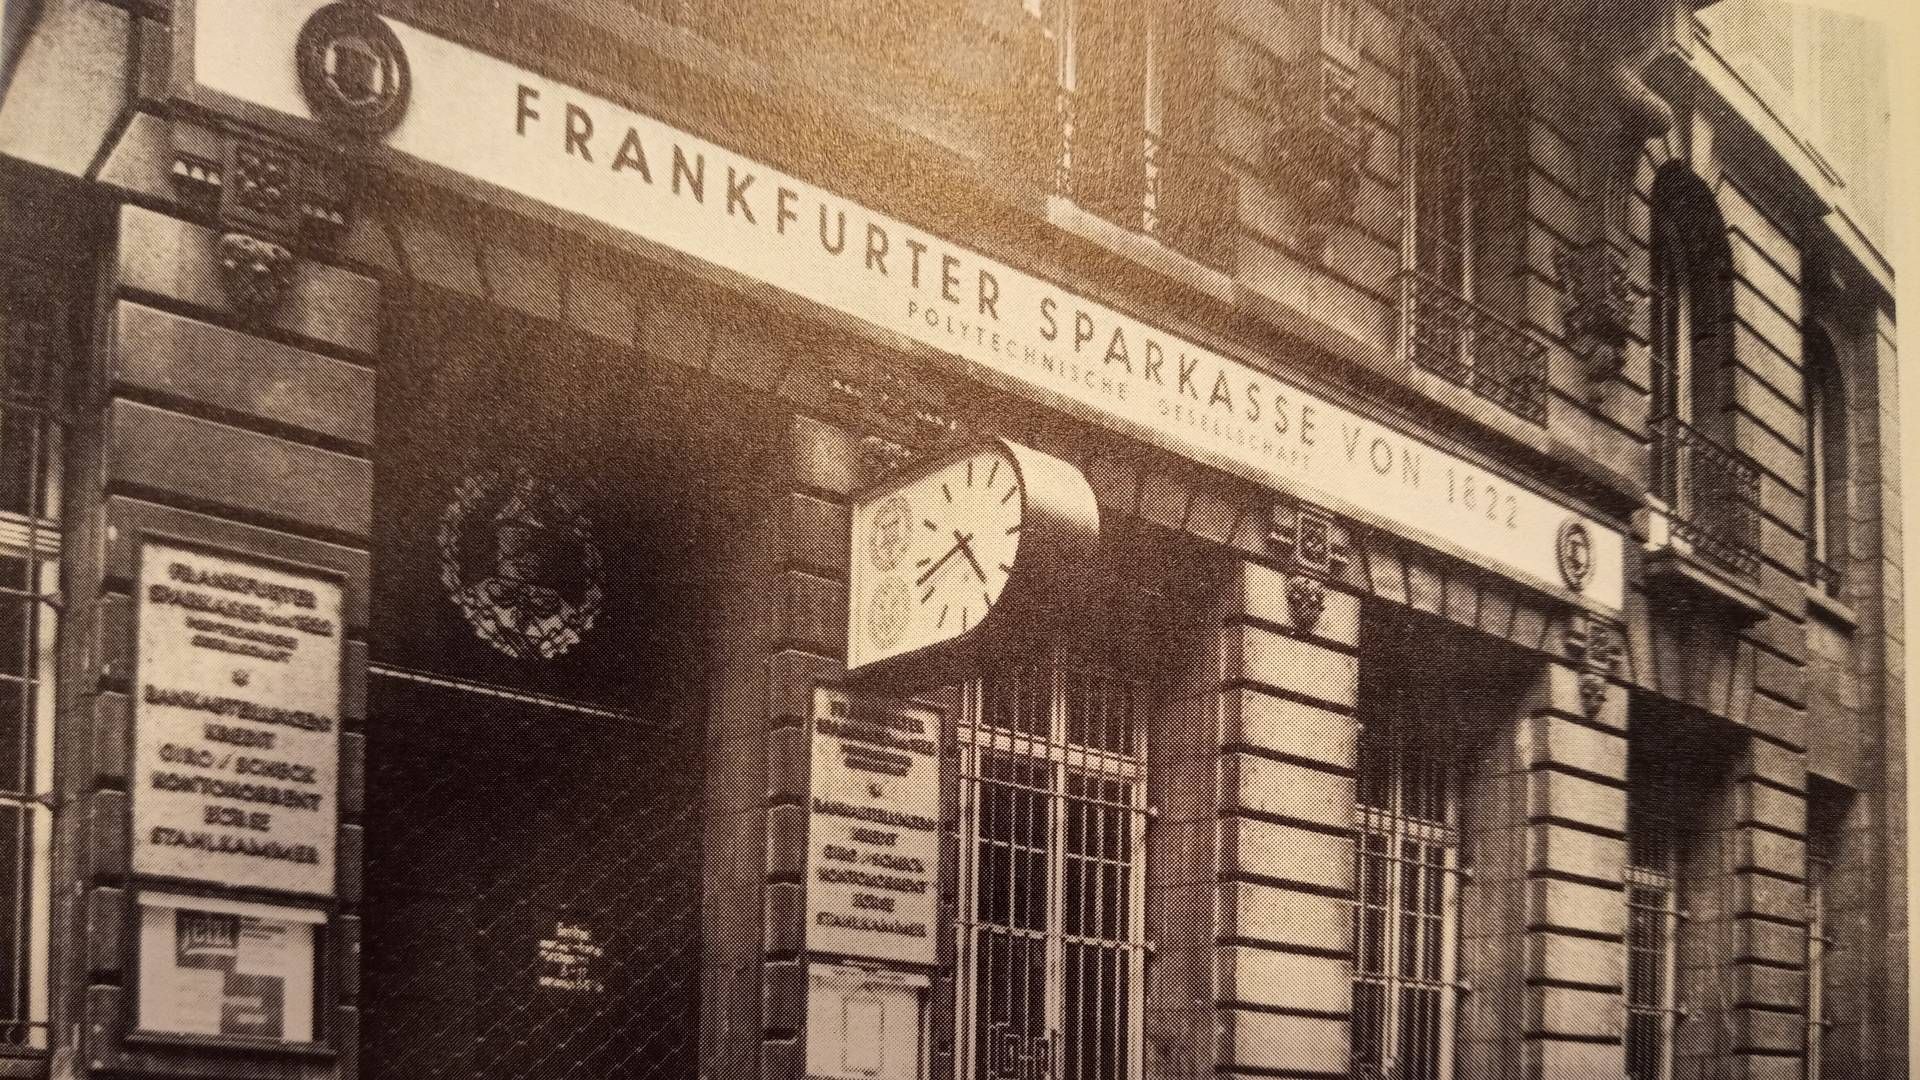 Aufnahme aus dem Jahr 1937: "Hauptstelle" der Frankfurter Sparkasse von 1822 an der Neuen Mainzer Straße 51, wo das Institut bis heute seinen Hauptsitz hat.